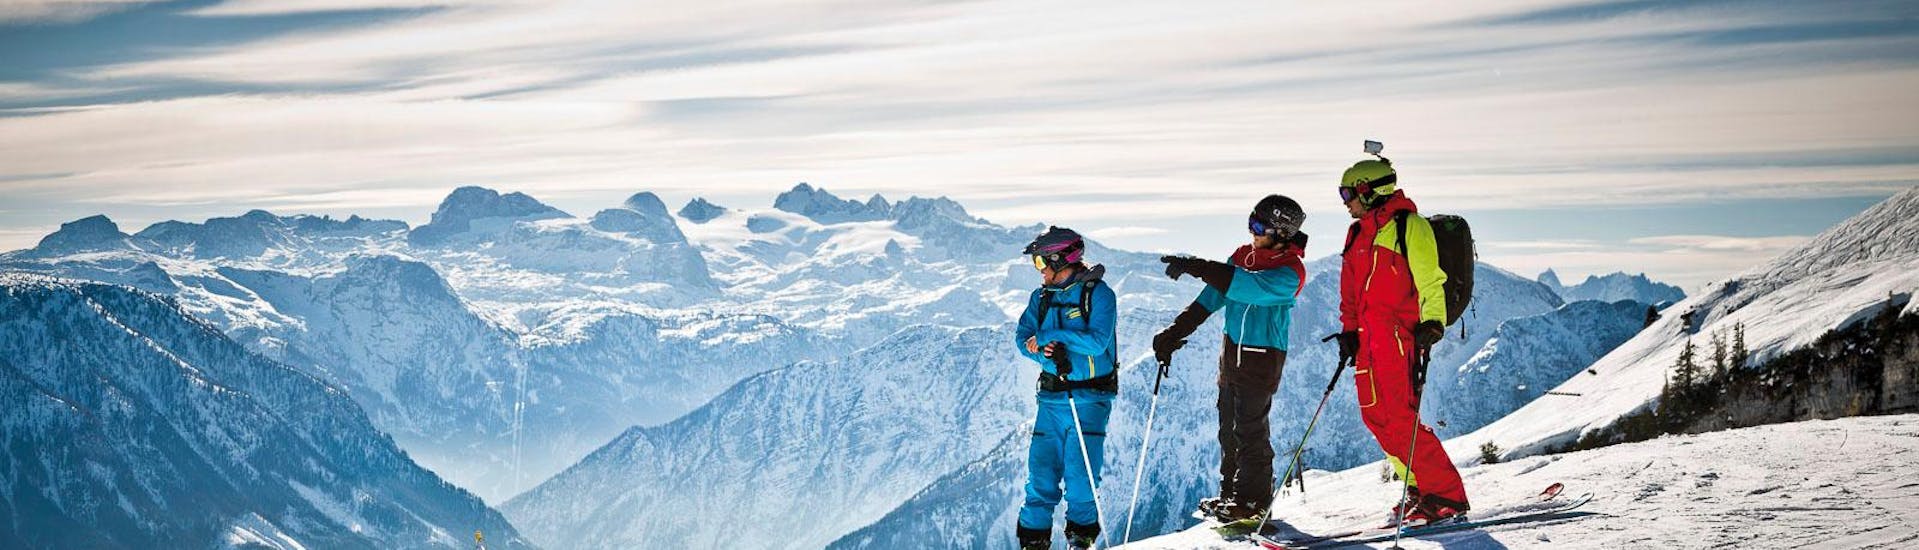 Cours particulier de ski Adultes pour Tous niveaux avec Snow & Mountain Sports Loitzl Loser.